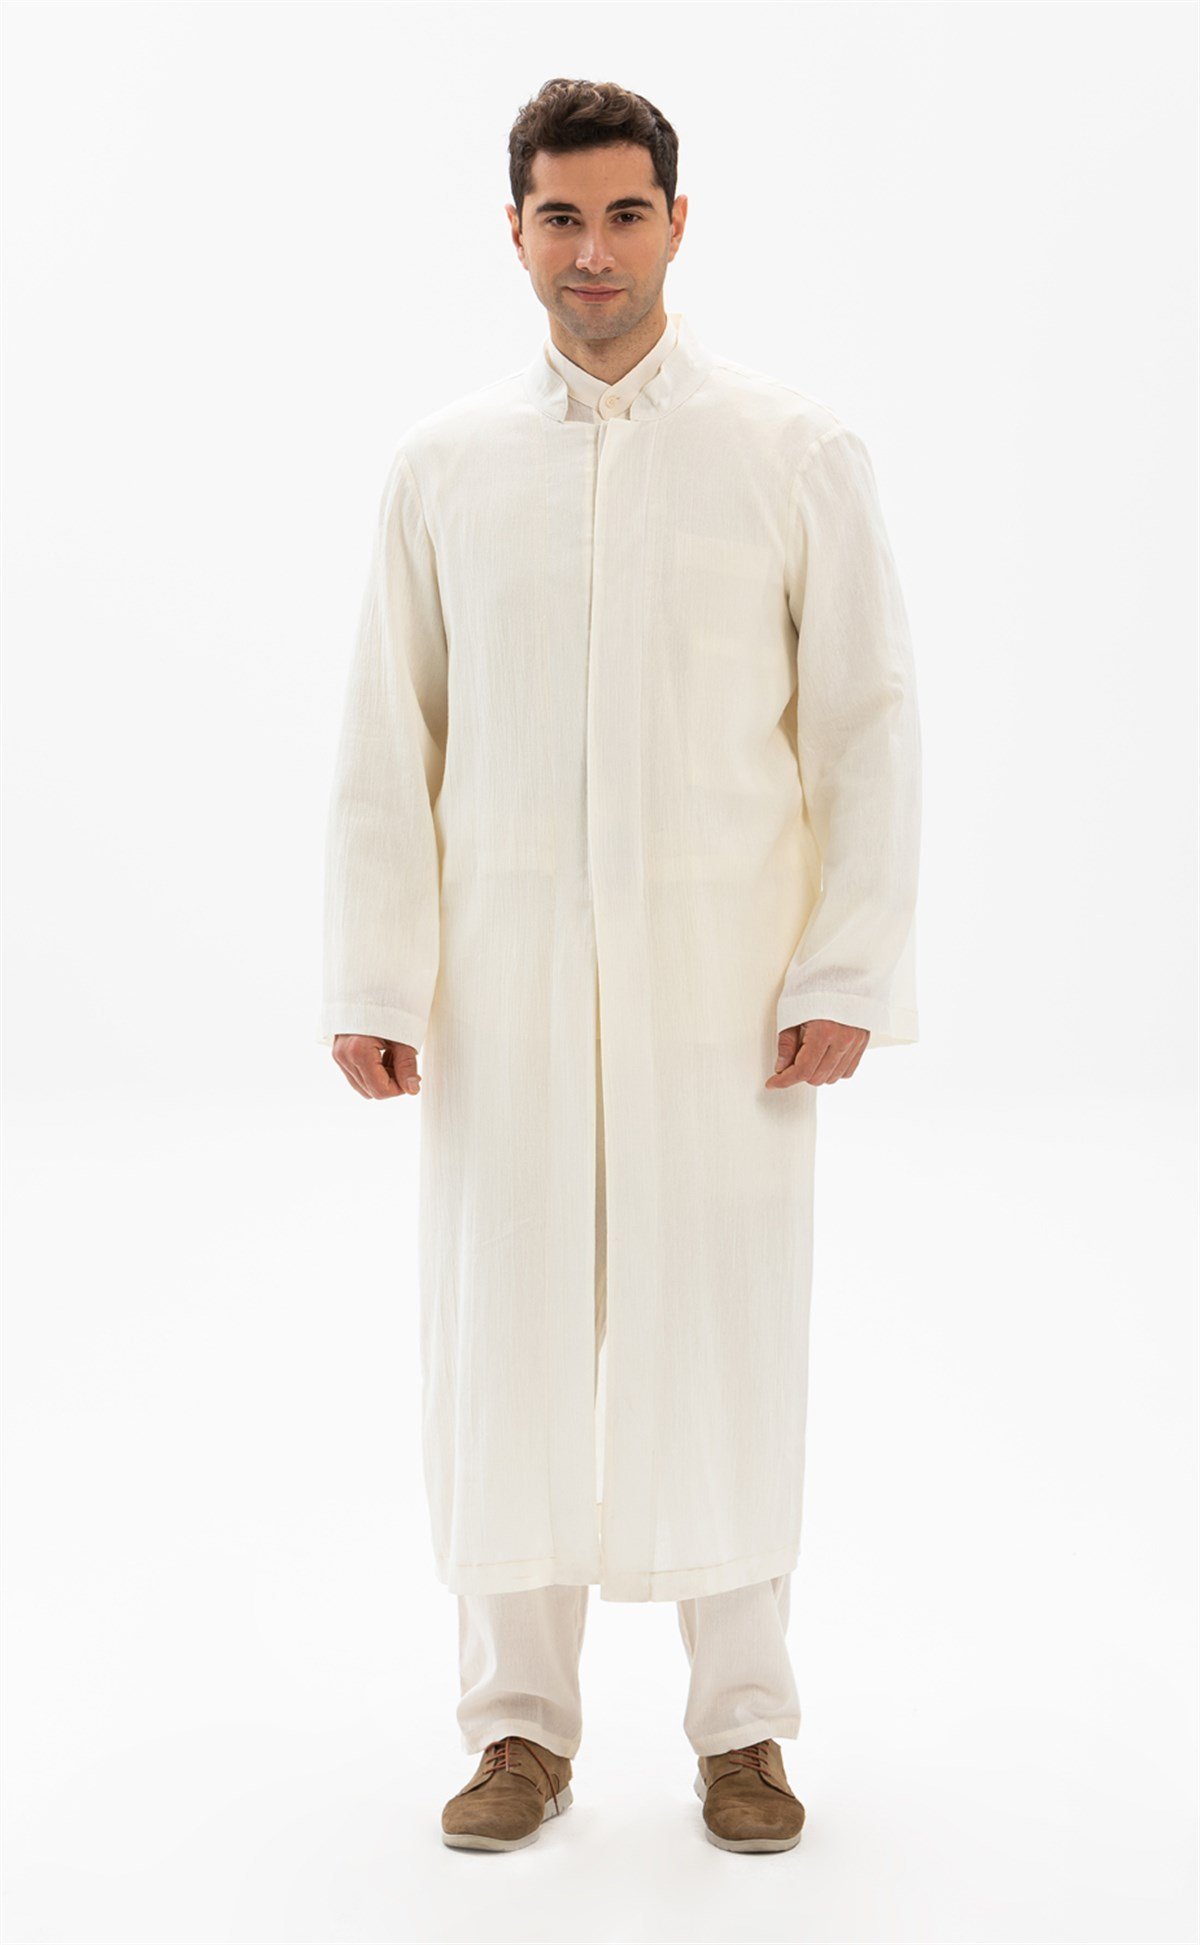 Erkek Namaz Elbisesi ve Cübbe Şile Bezi | Silemoda.com